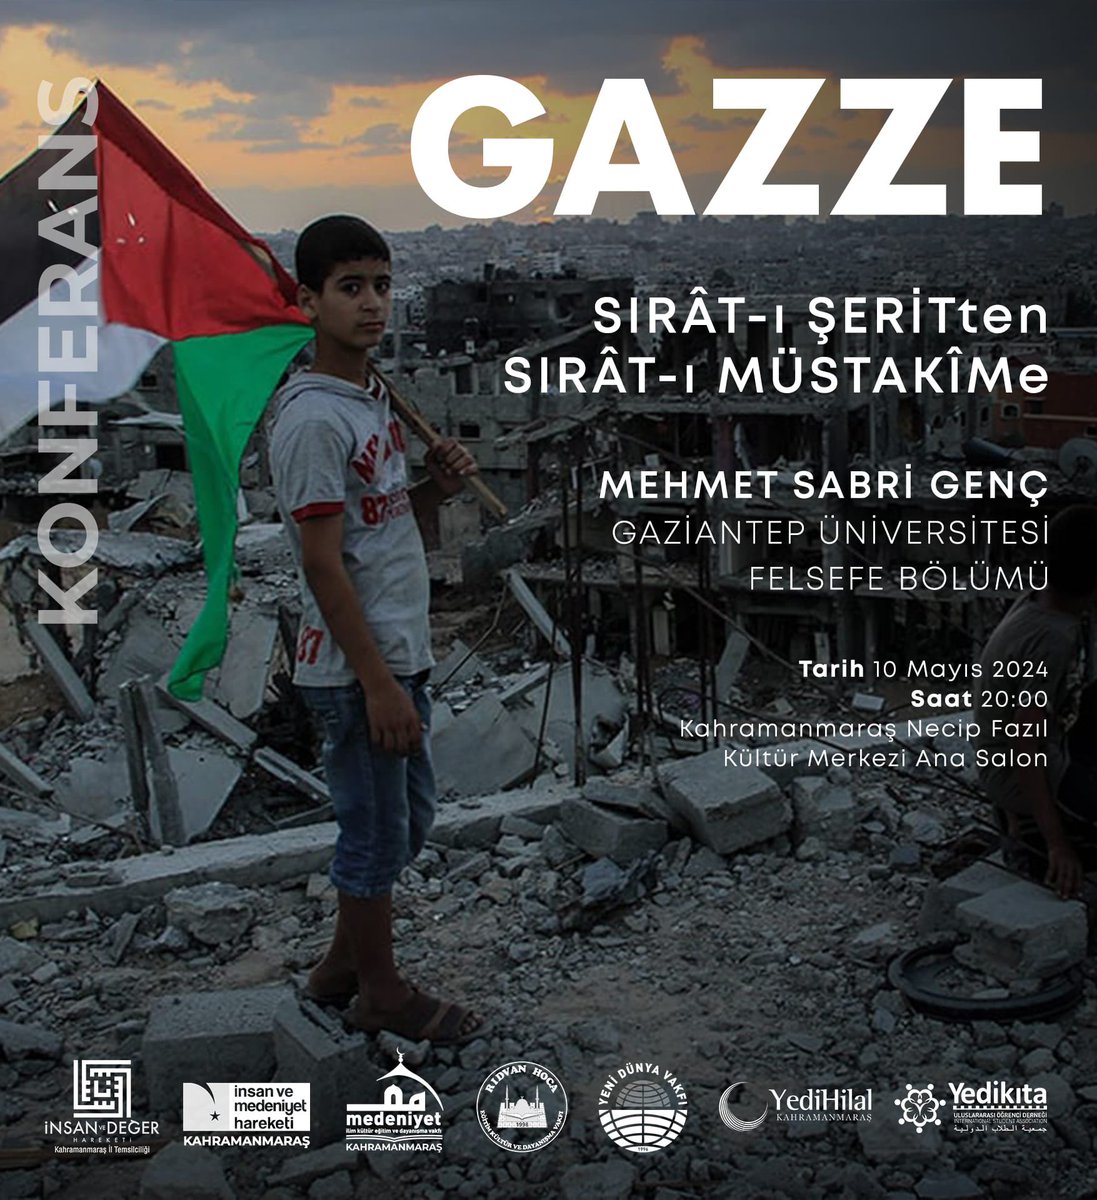 Meselemiz Gazze! Unutma! Alışma! Bu niyetle 10 Mayıs Cuma günü NFK Kültür Merkezinde saat 20.00’da farklı bir bakış ve derinlikte Gazze’yi dinleyeceğimiz yazar Mehmet Sabri Genç hocamızın konuşmalarına teşriflerinizi bir ‘istikamet yürüyüşü kabilinden’ istirham ederiz.